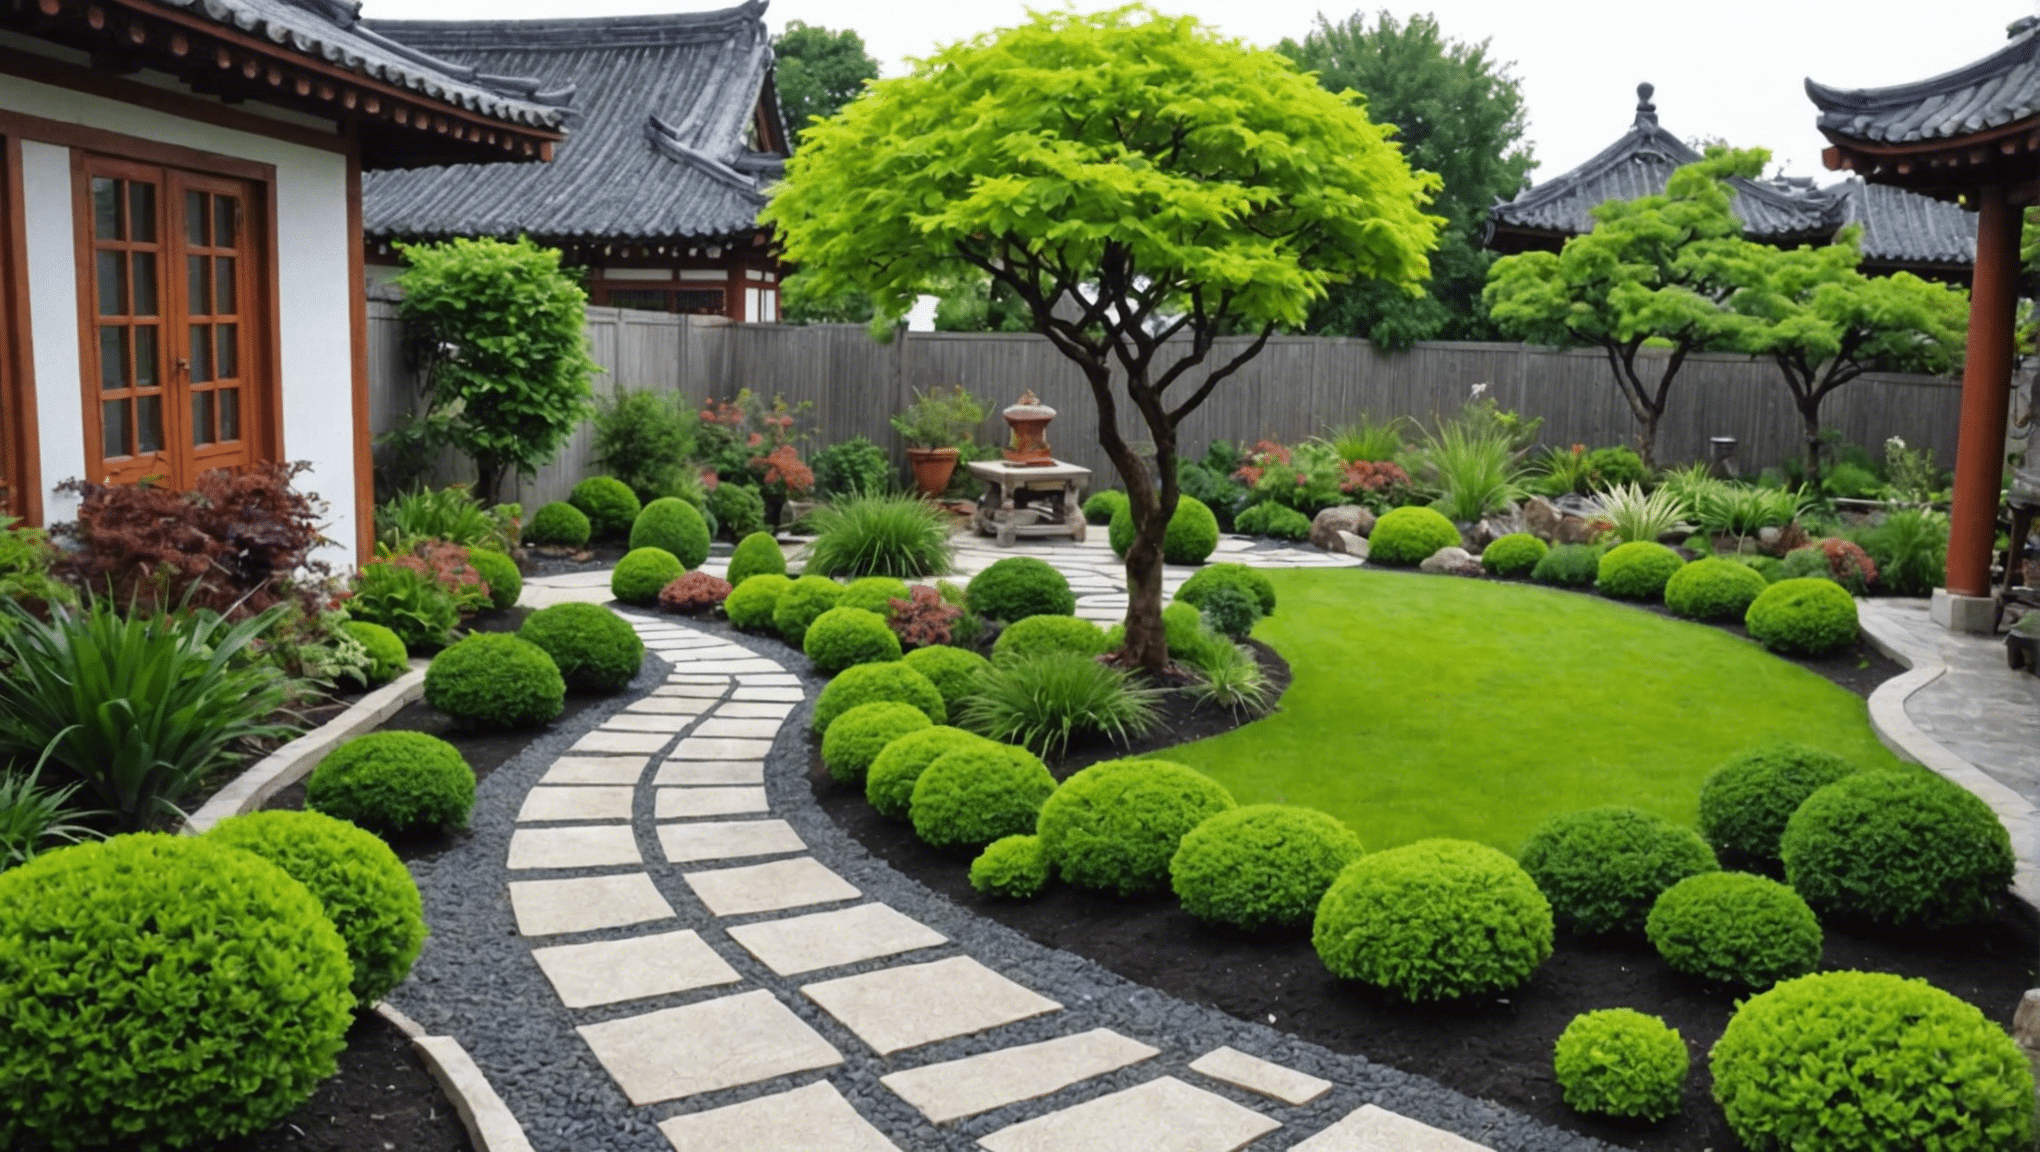 upptäck kreativa och inspirerande asiatiska trädgårdsidéer för din uteplats med våra experttips och inspiration. från traditionella japanska trädgårdar till modern zen-design, hitta den perfekta inspirationen för din utomhusoas.